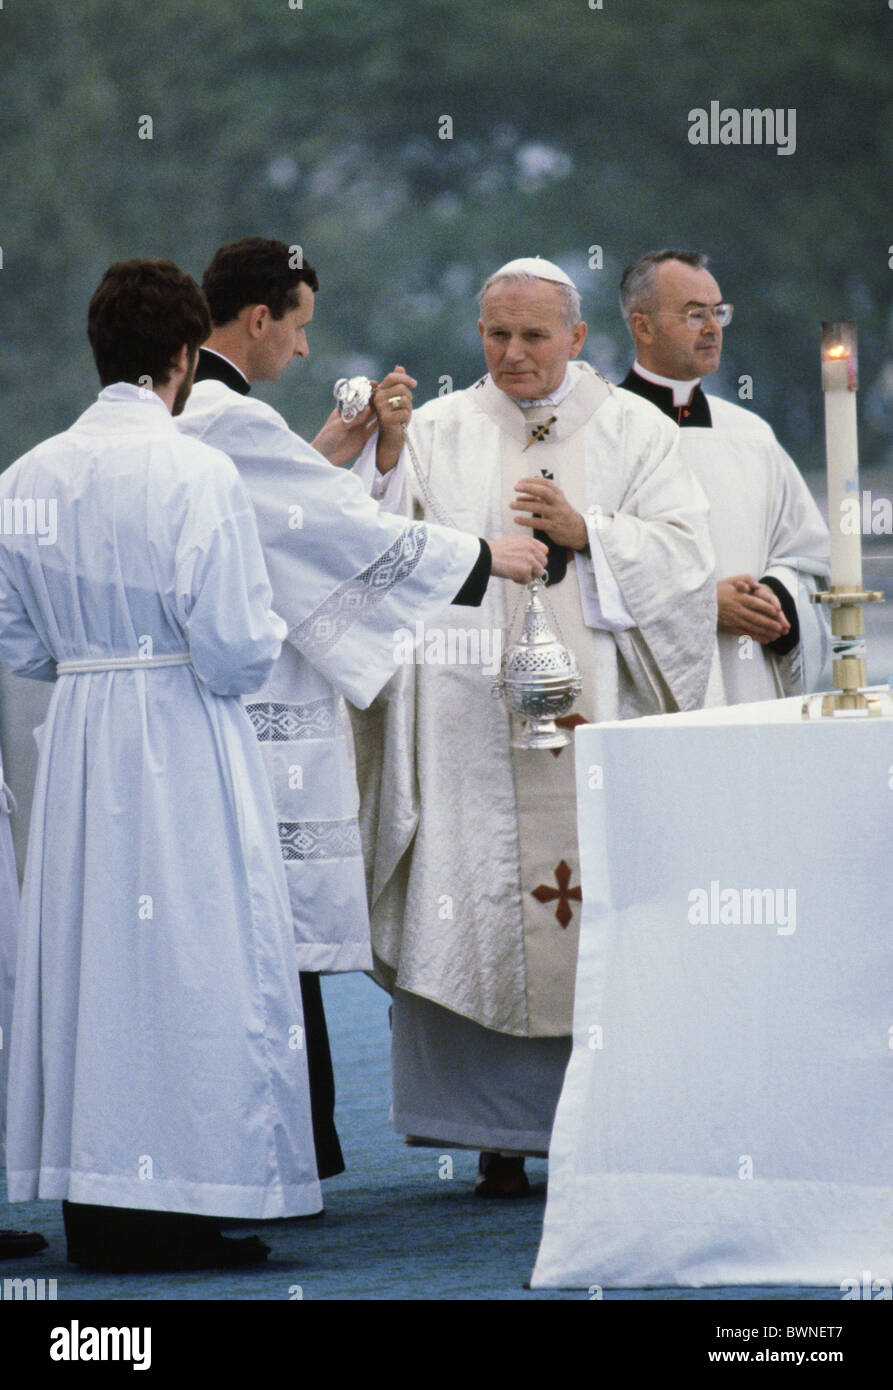 Le Pape Jean Paul II dit la messe dans Knock, Irlande. Jour (pas de date connue) Banque D'Images